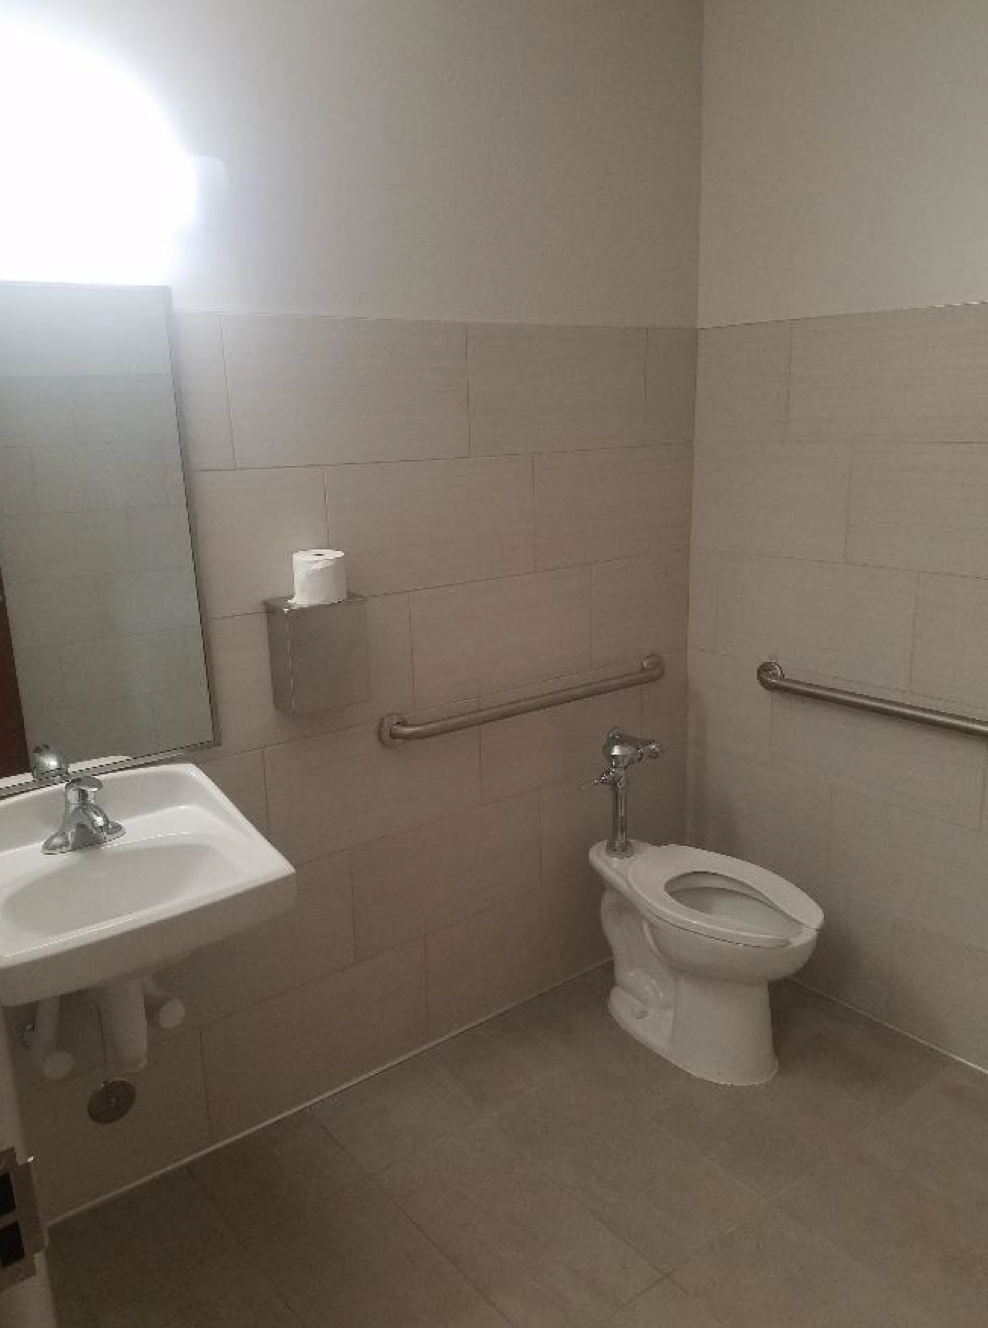 New clinic bathroom